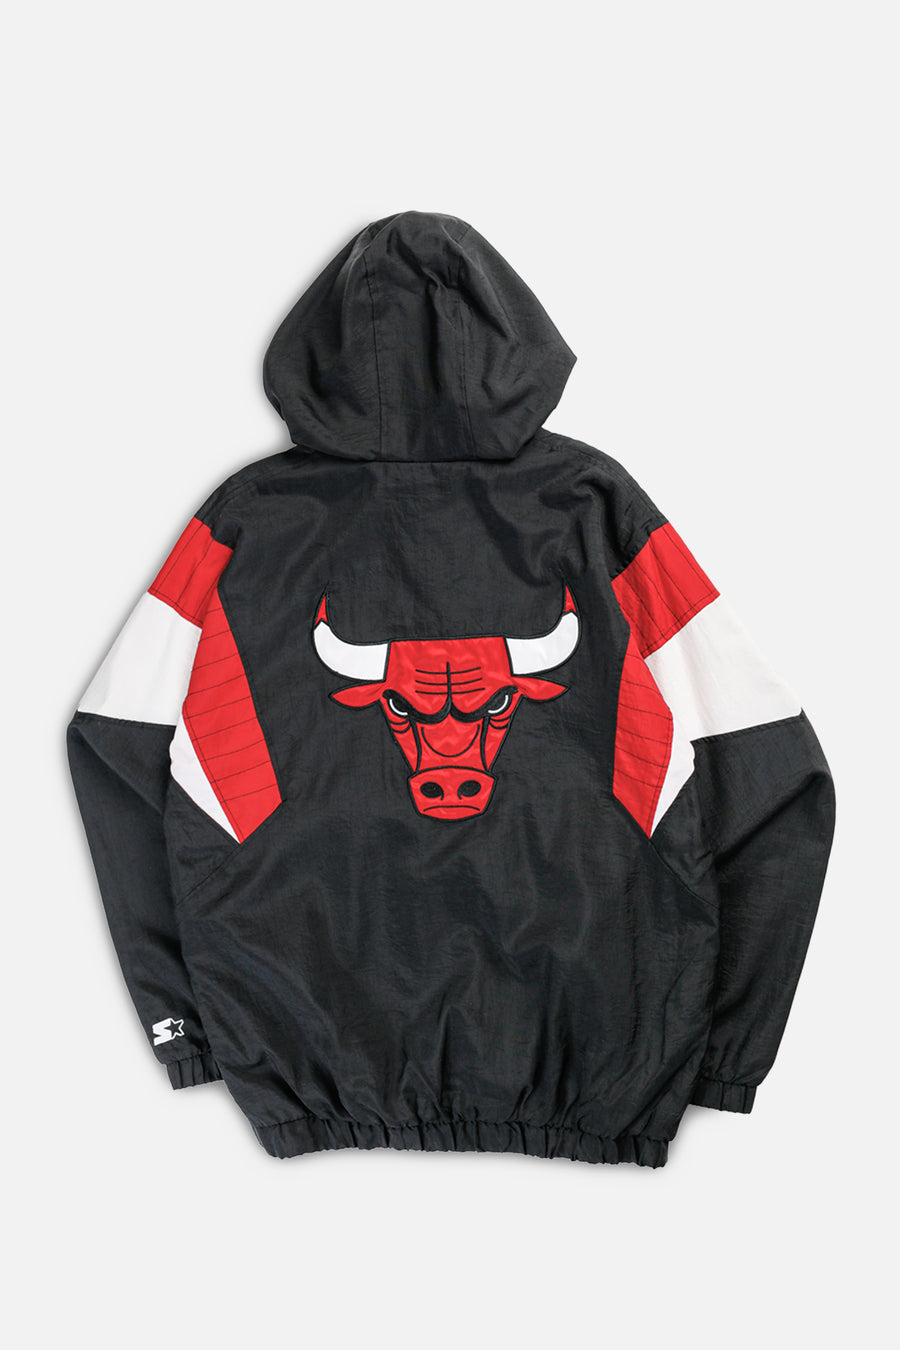 Vintage Chicago Bulls NBA Starter Jacket - L